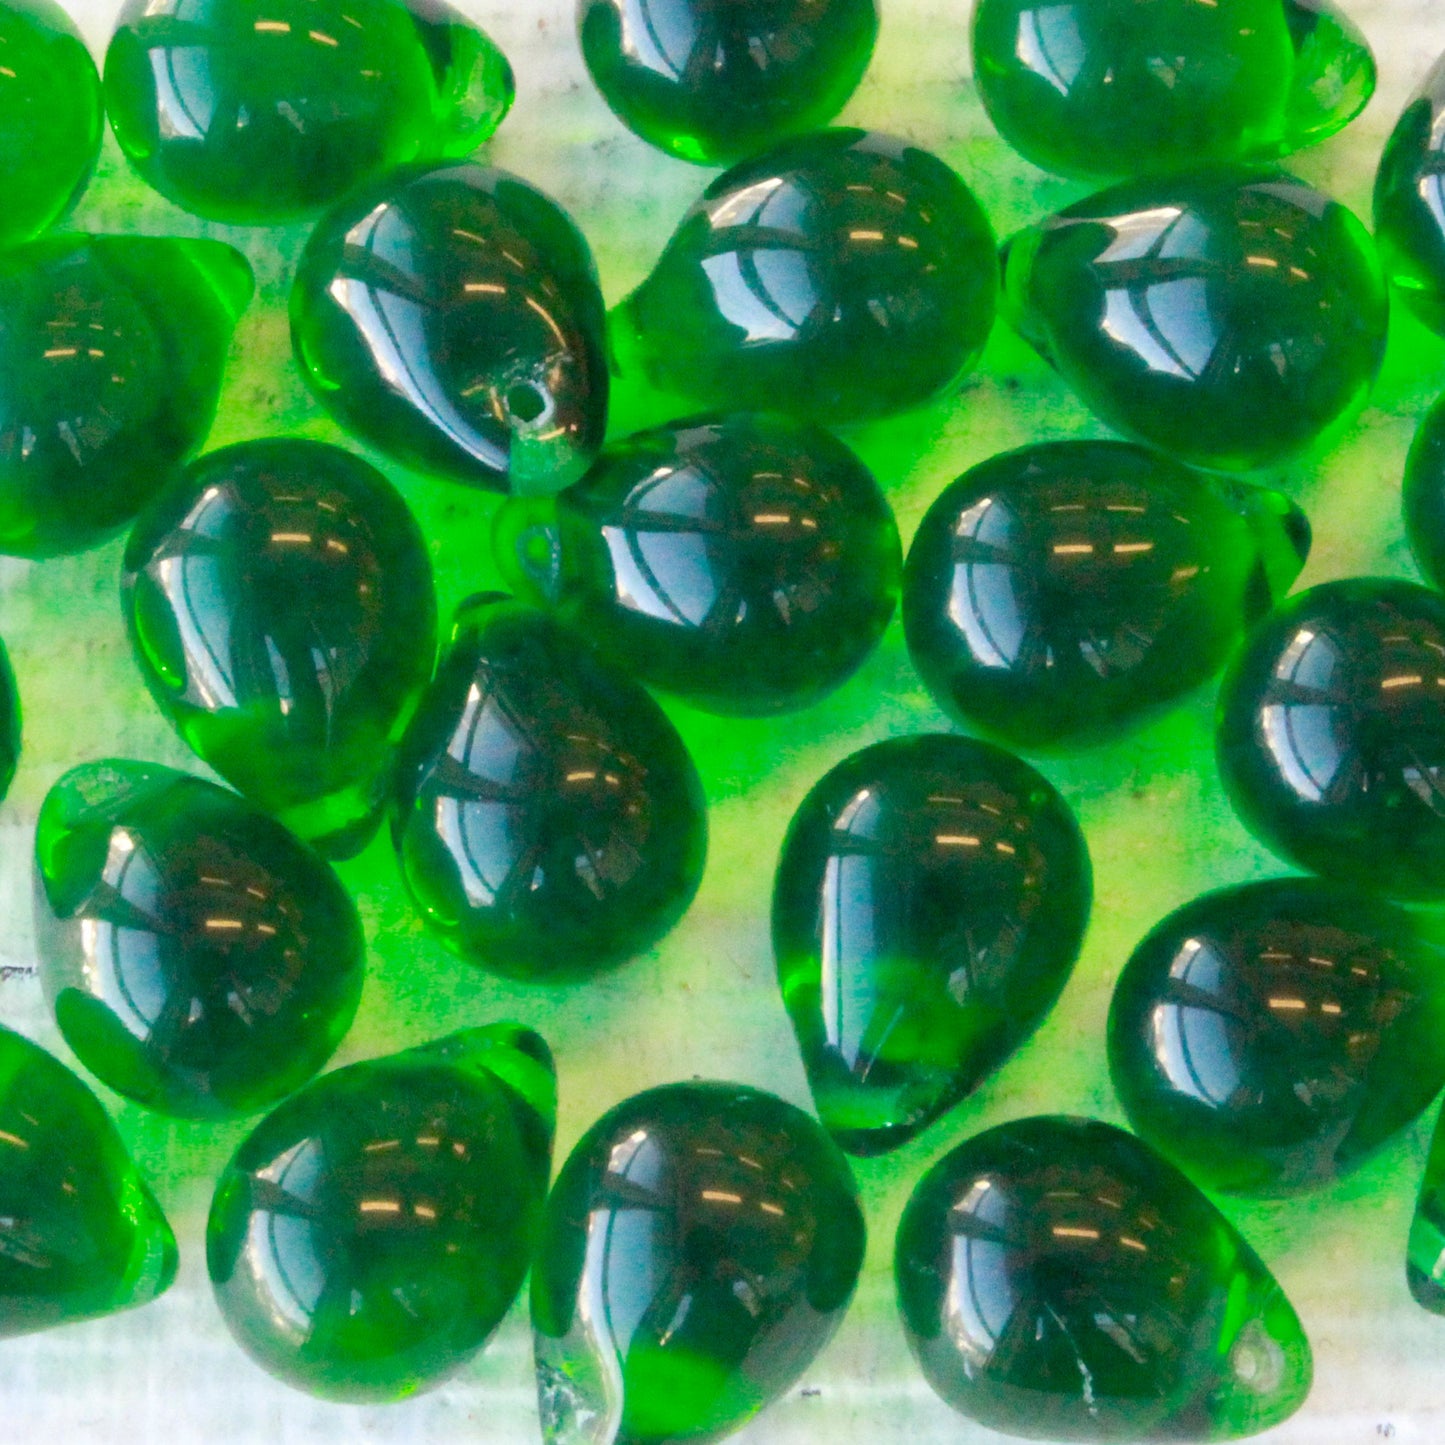 10x14mm Glass Teardrop Beads - Kelly Green - Choose Amount